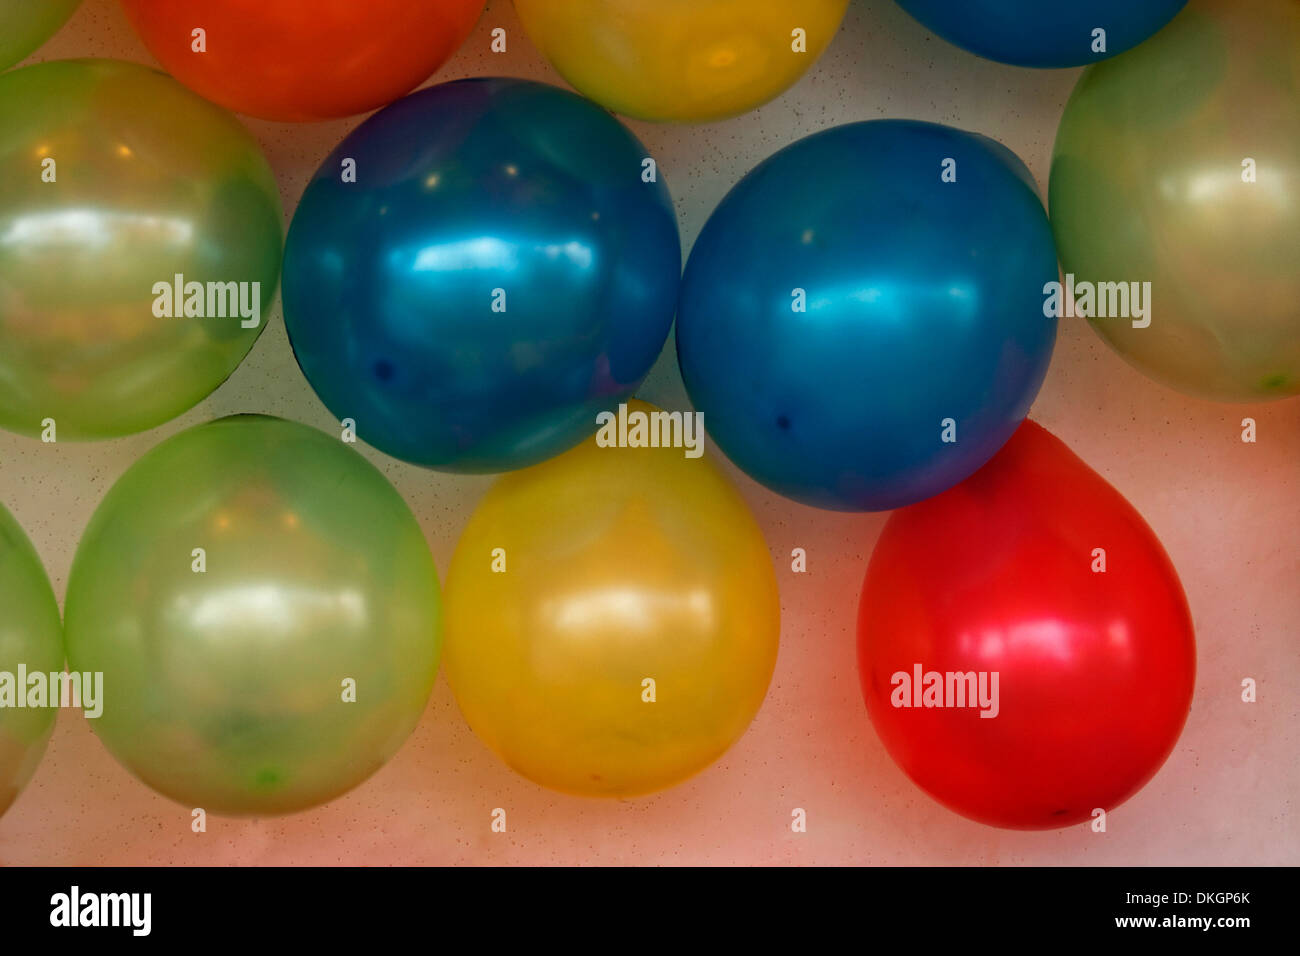 Groupe de ballons aux couleurs vives - rouge, jaune, vert et bleu Banque D'Images